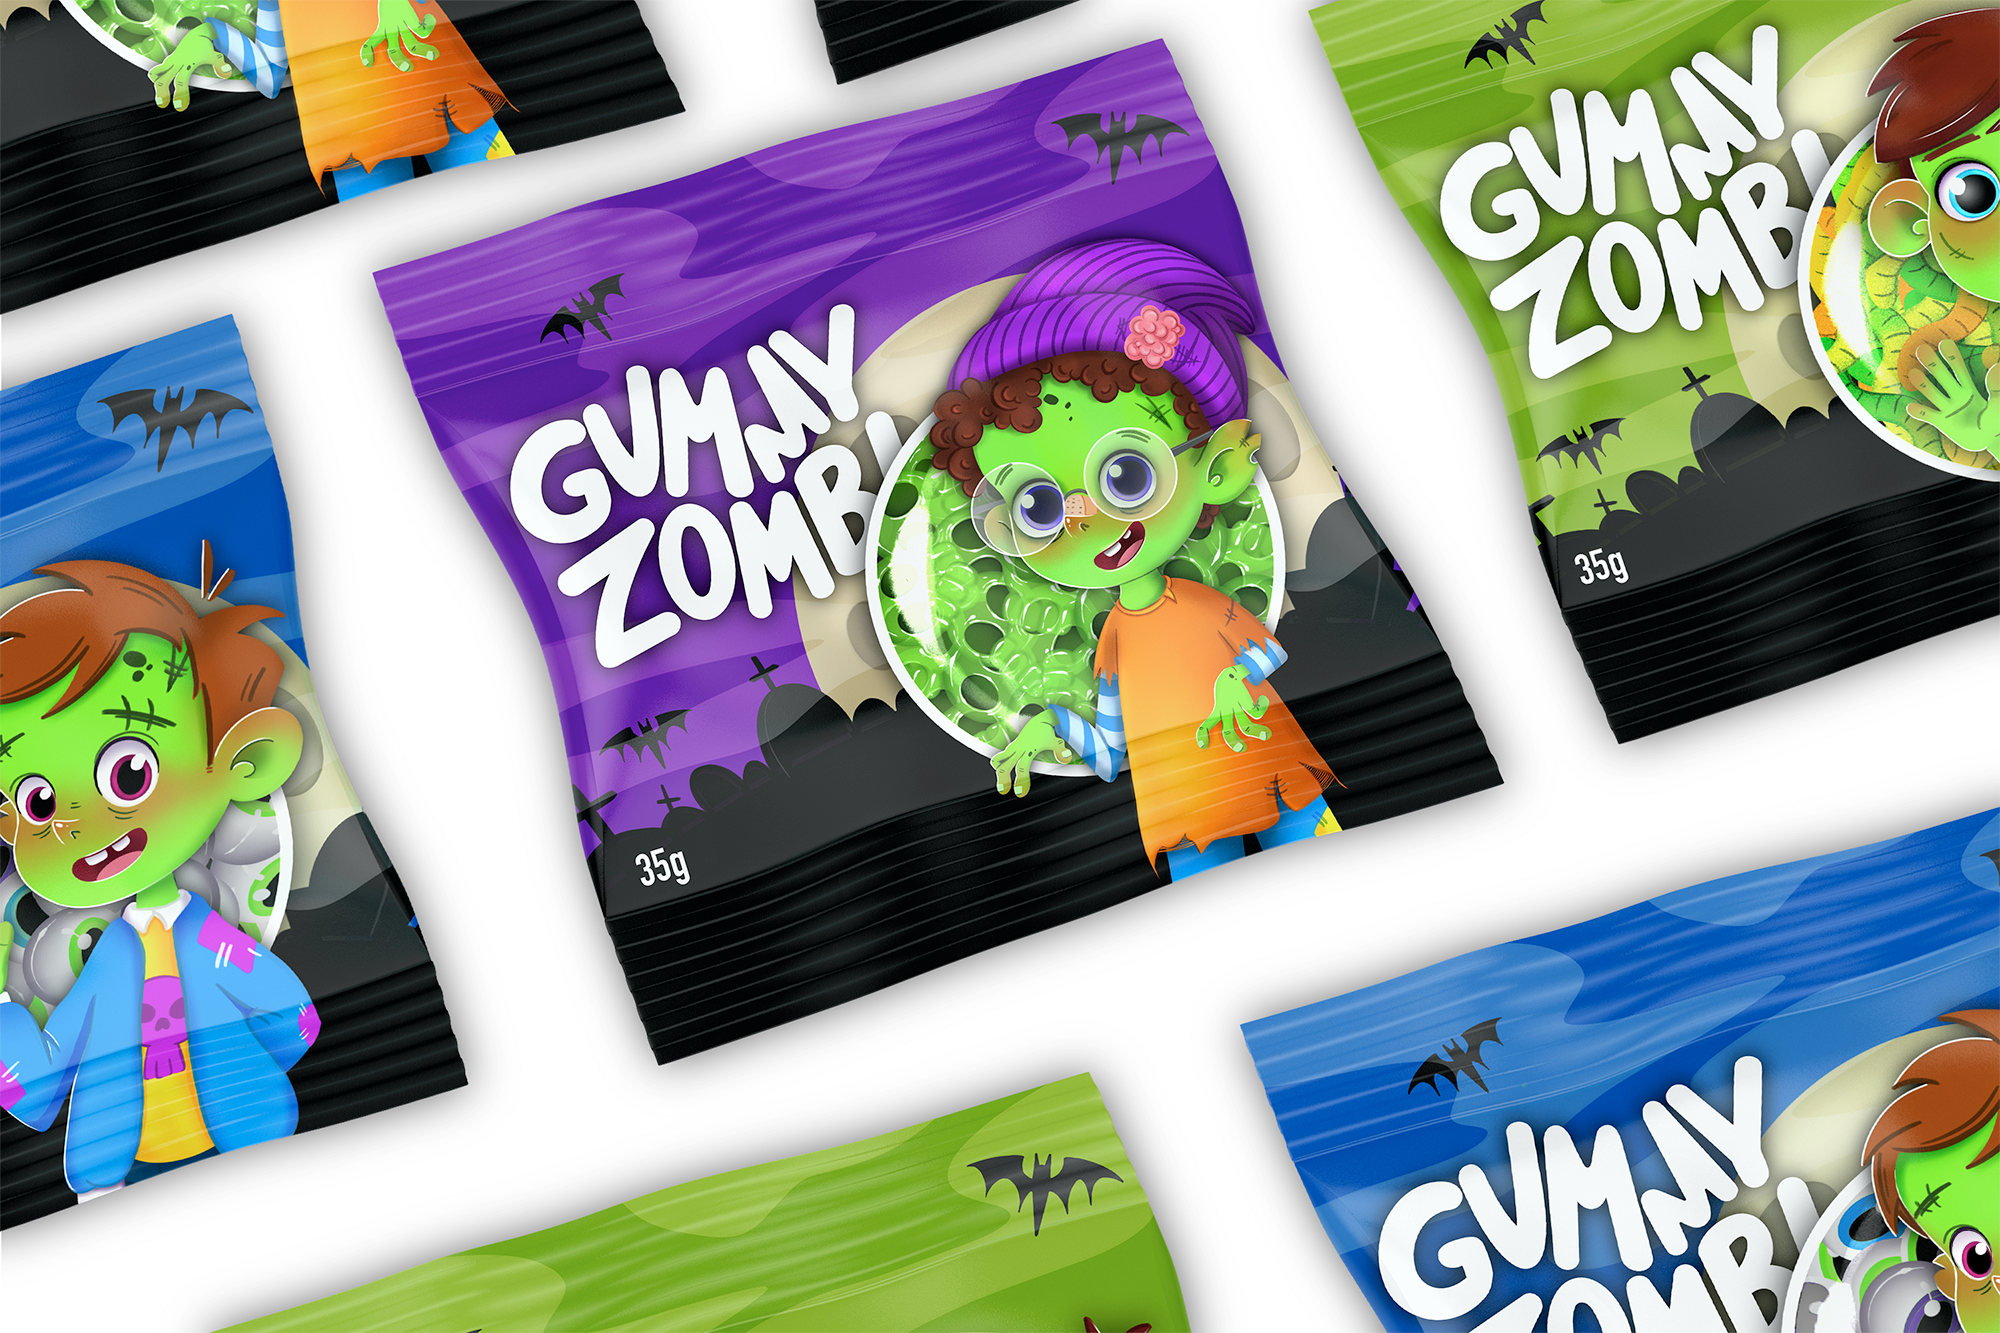 Дизайн упаковки "Gummy Zombi" и персонажи-зомби. — Изображение №1 — Иллюстрация на Dprofile